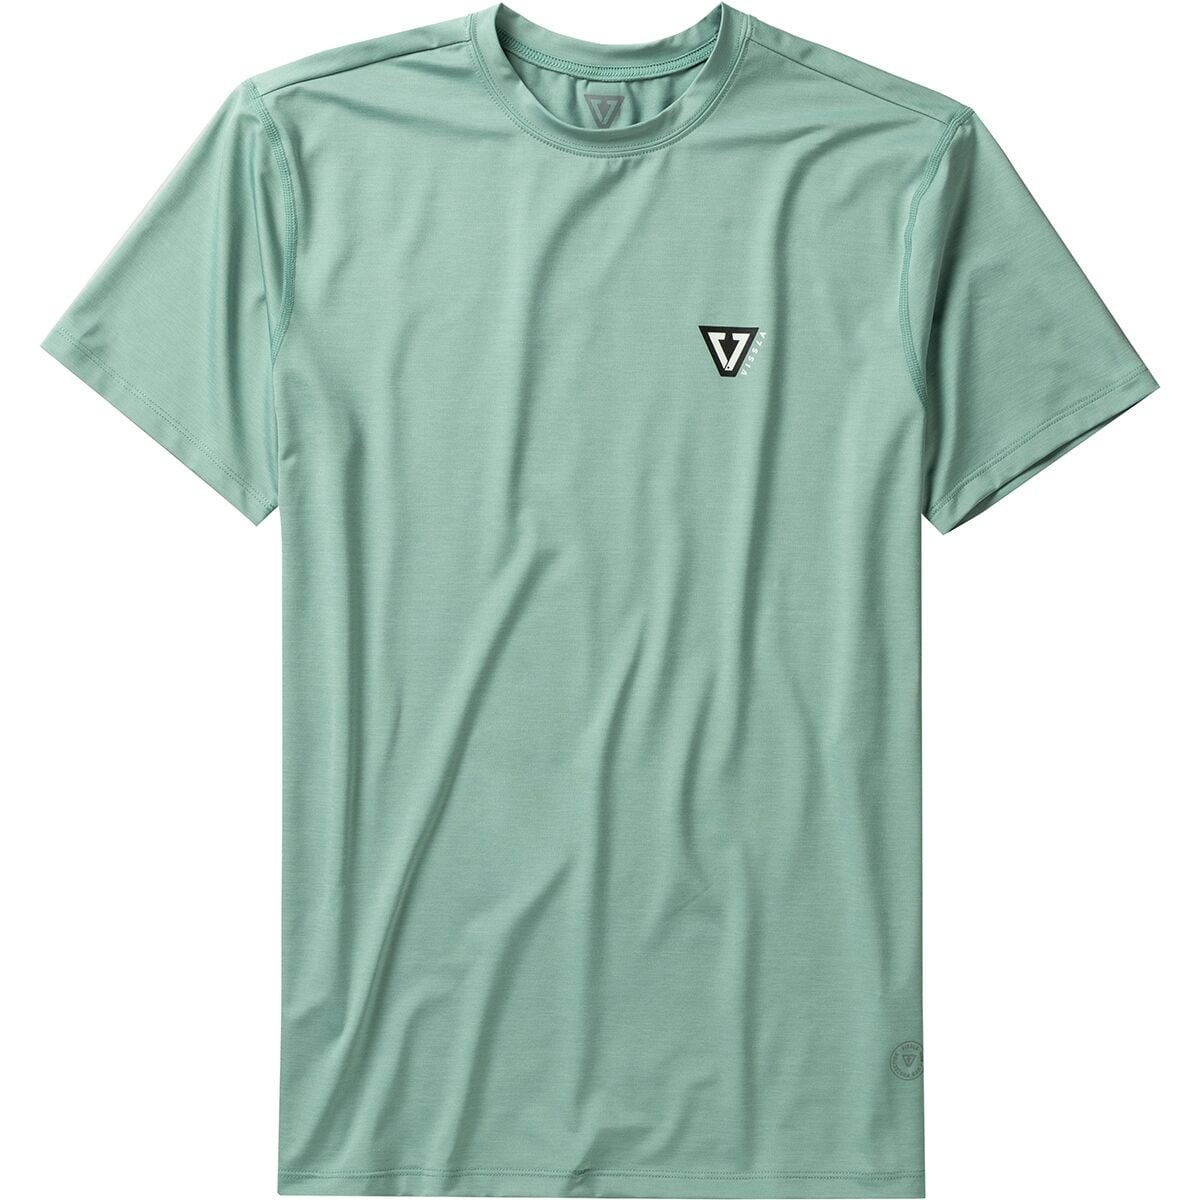 Twisted Eco Short-Sleeve Shirt - Men